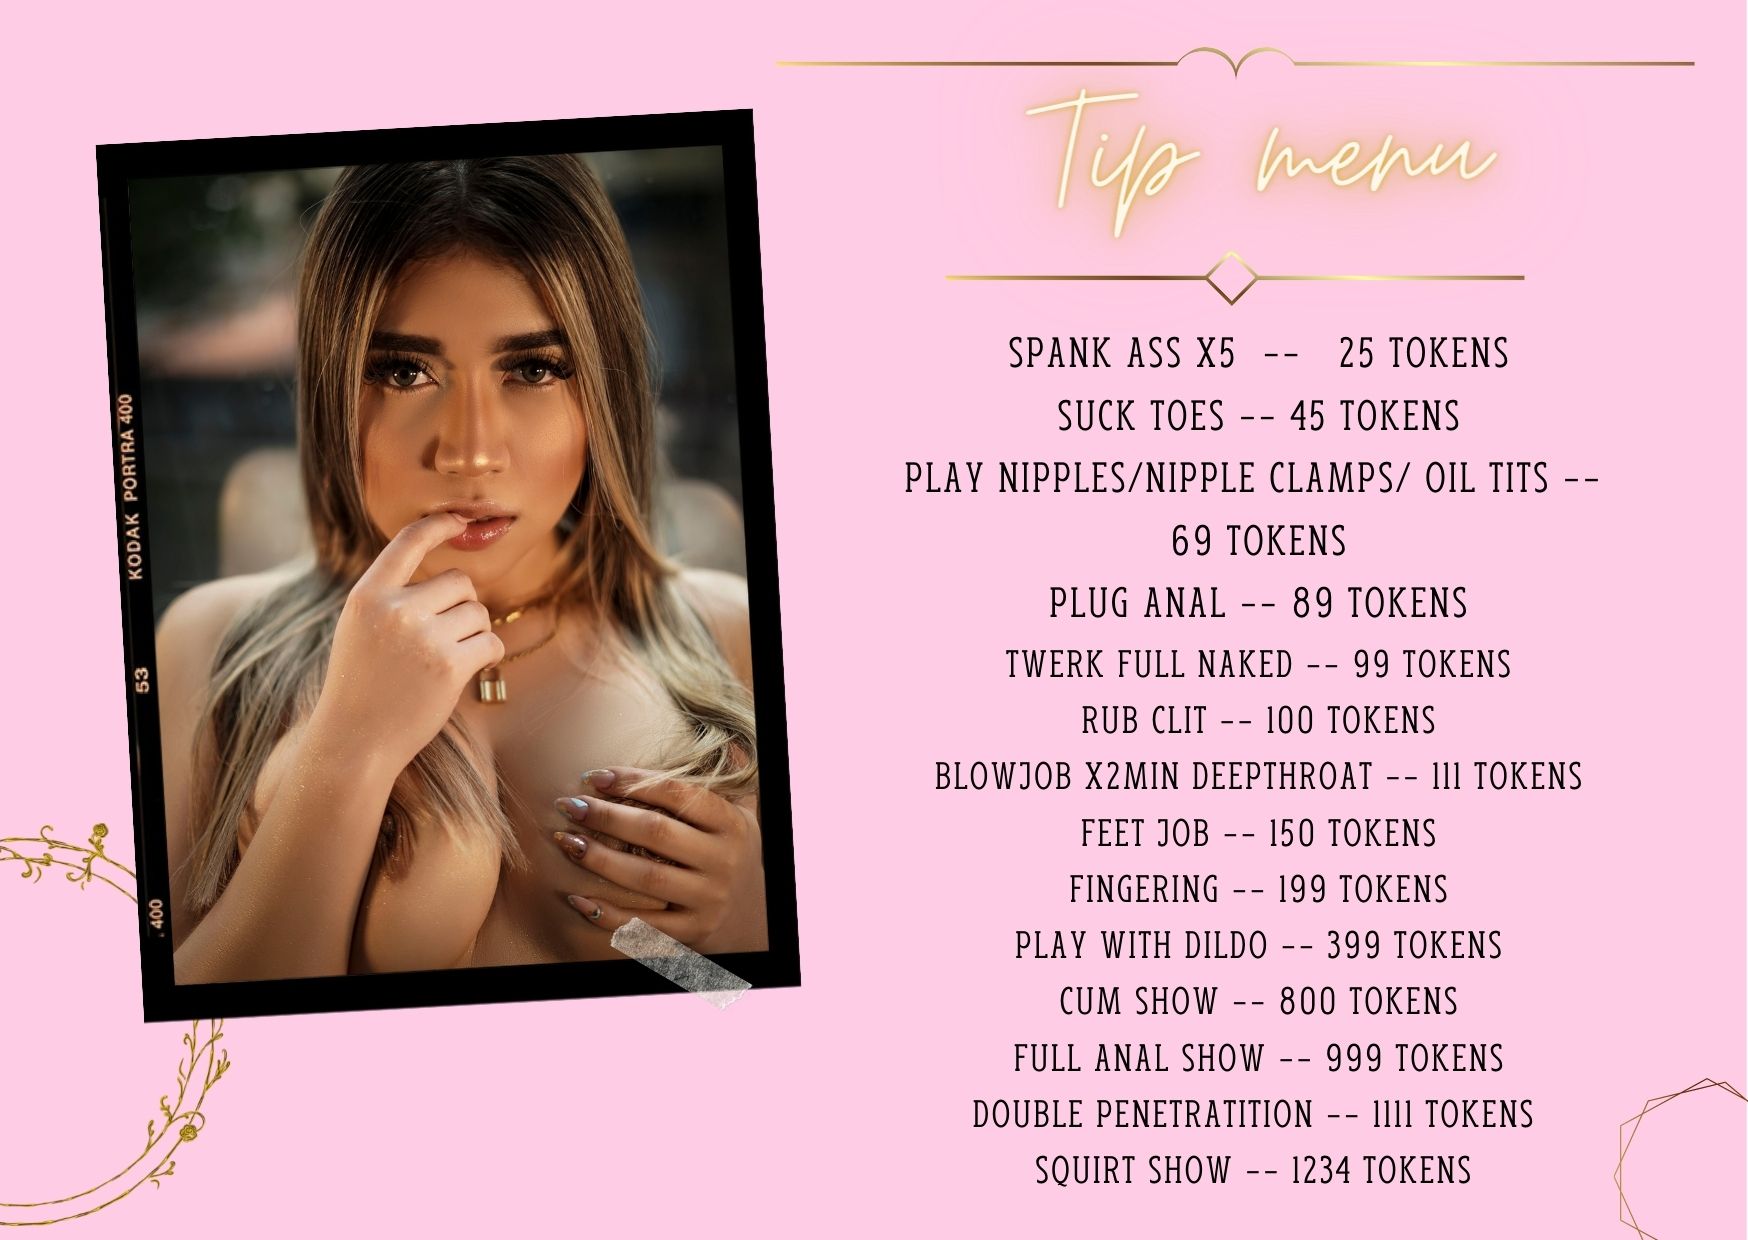 Kassia-Rogers tip menu image: 1